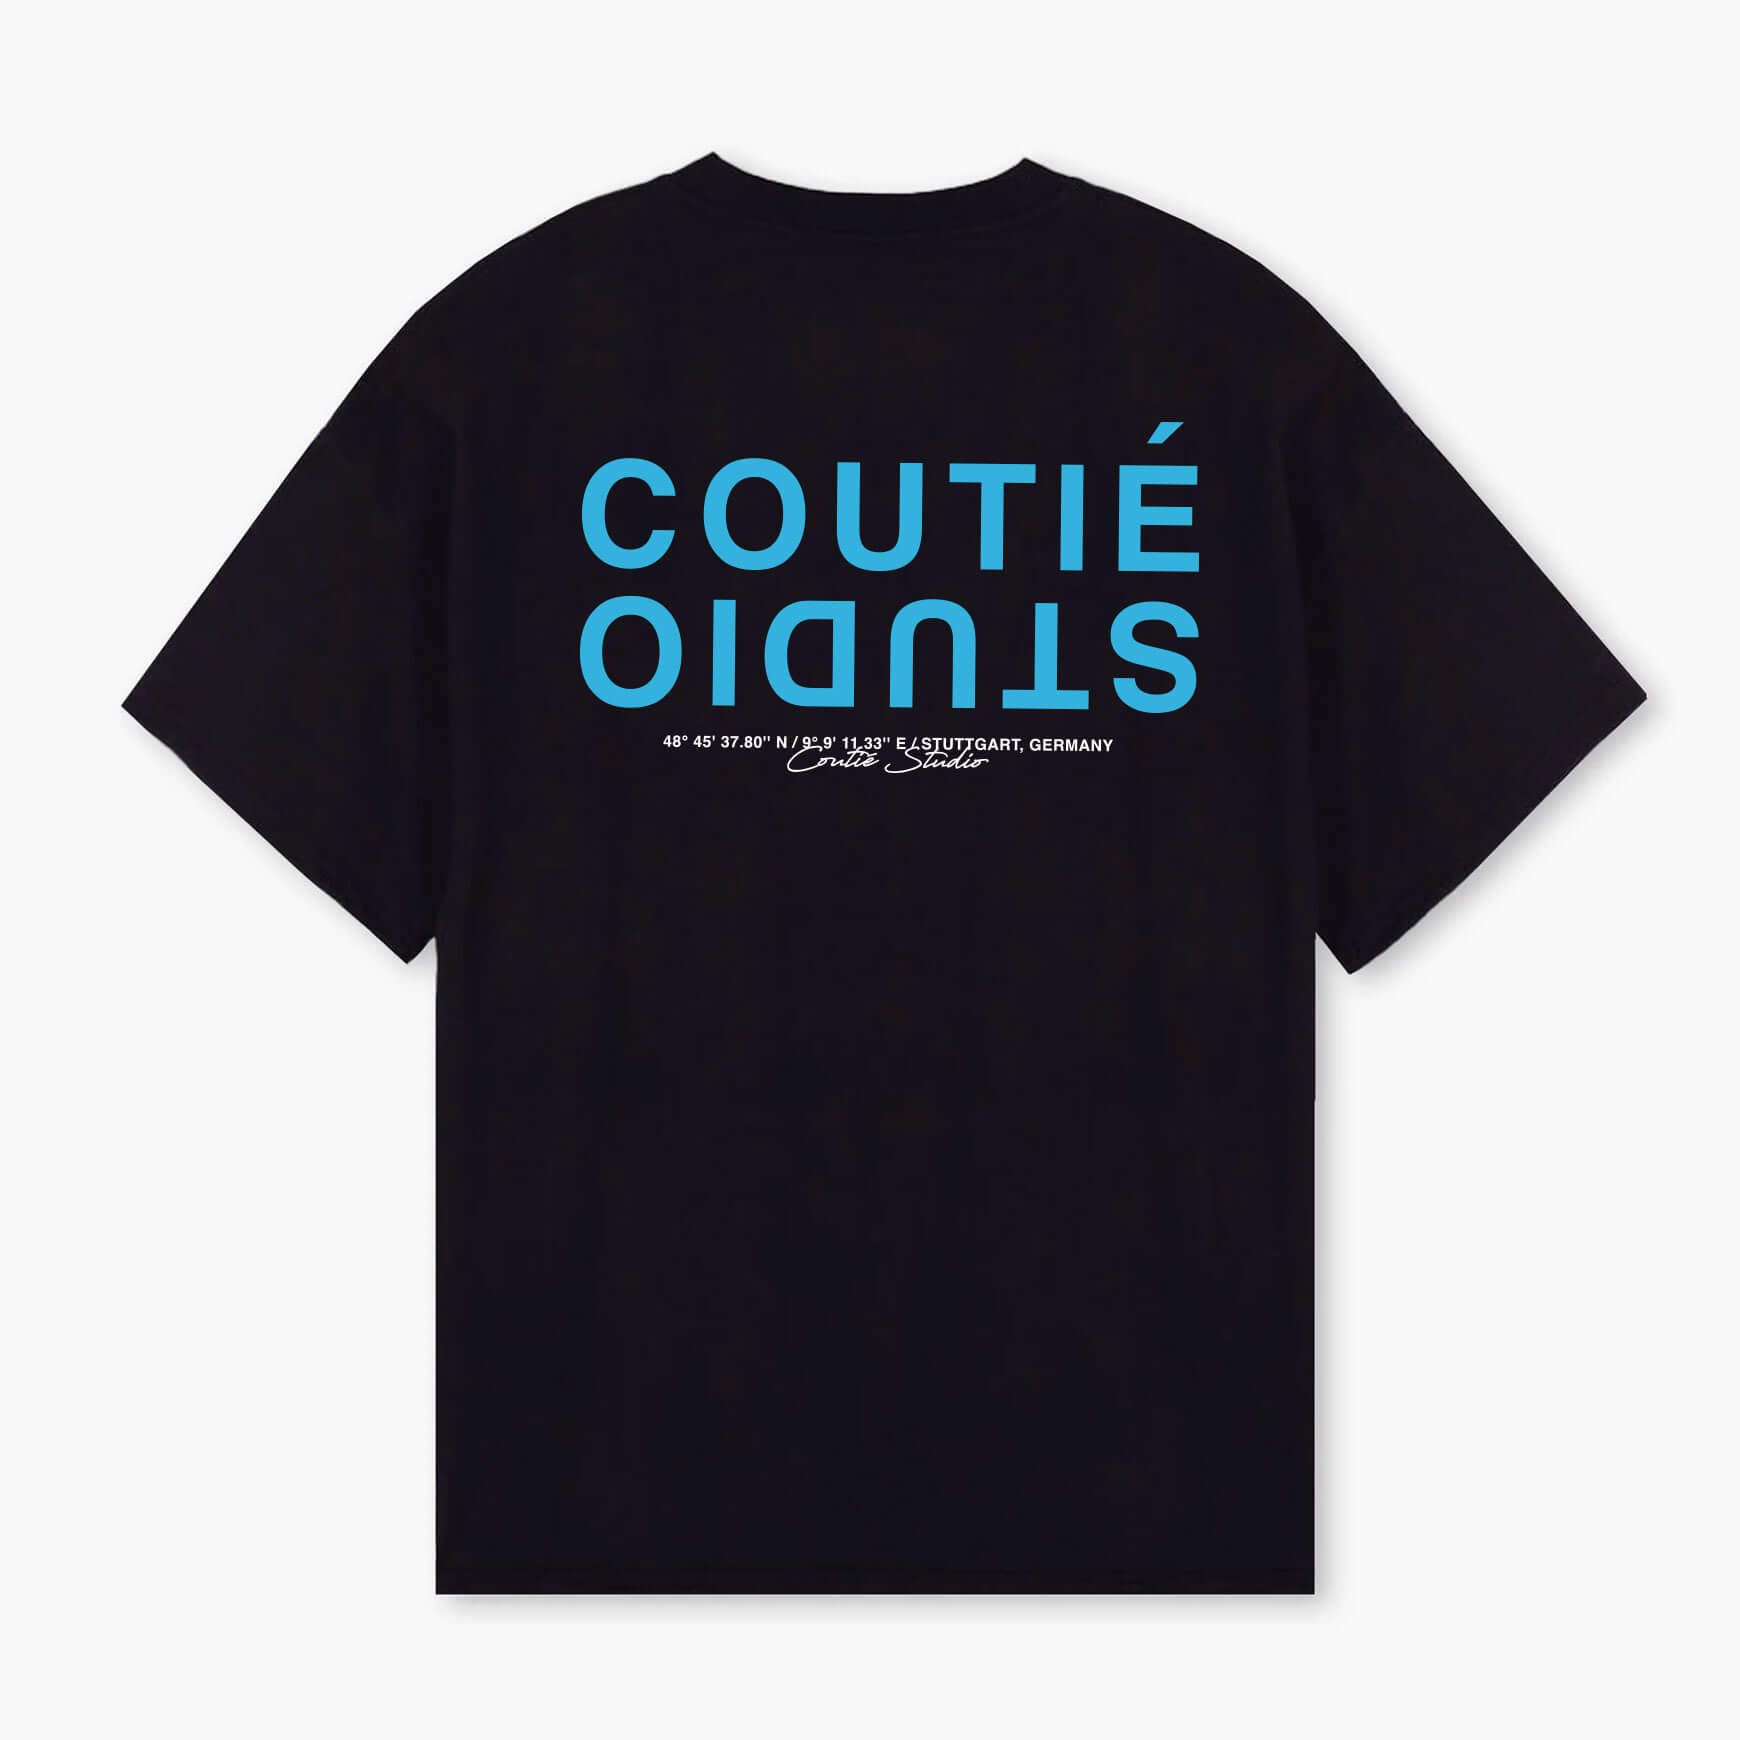 Coutié Custom Vans Old Skool Ideas That Connect